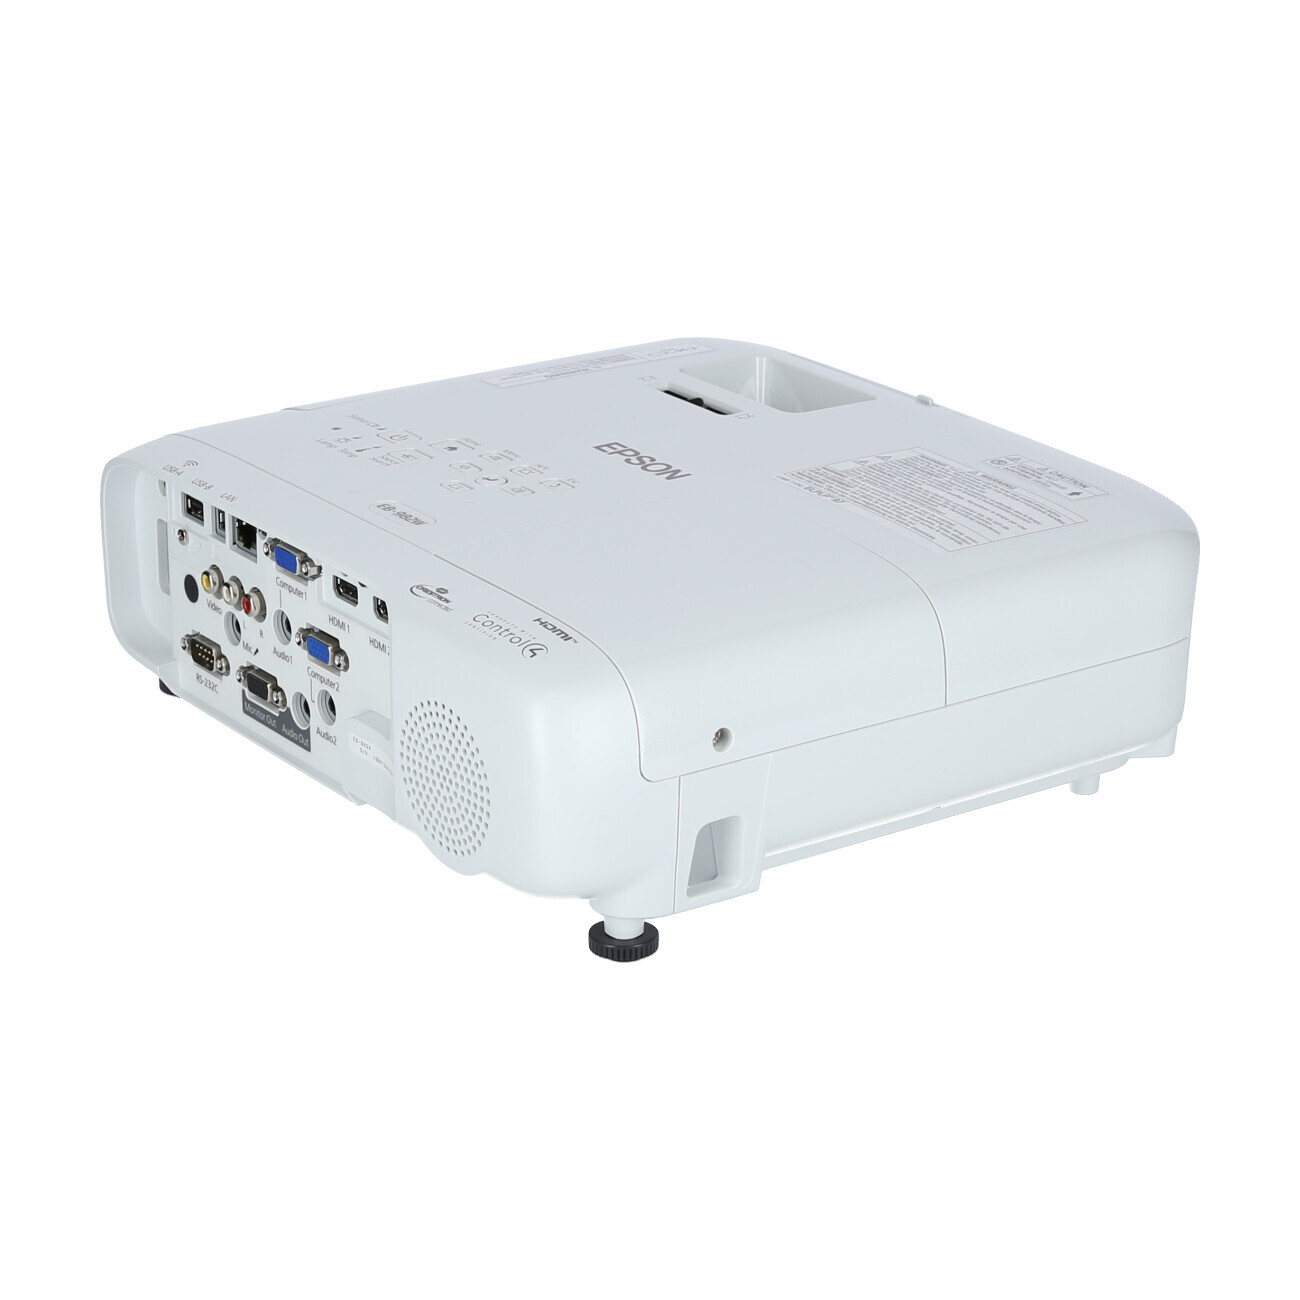 Vorschau: Epson EB-982W Businessbeamer mit 4200 Lumen und WXGA Auflösung - Demo